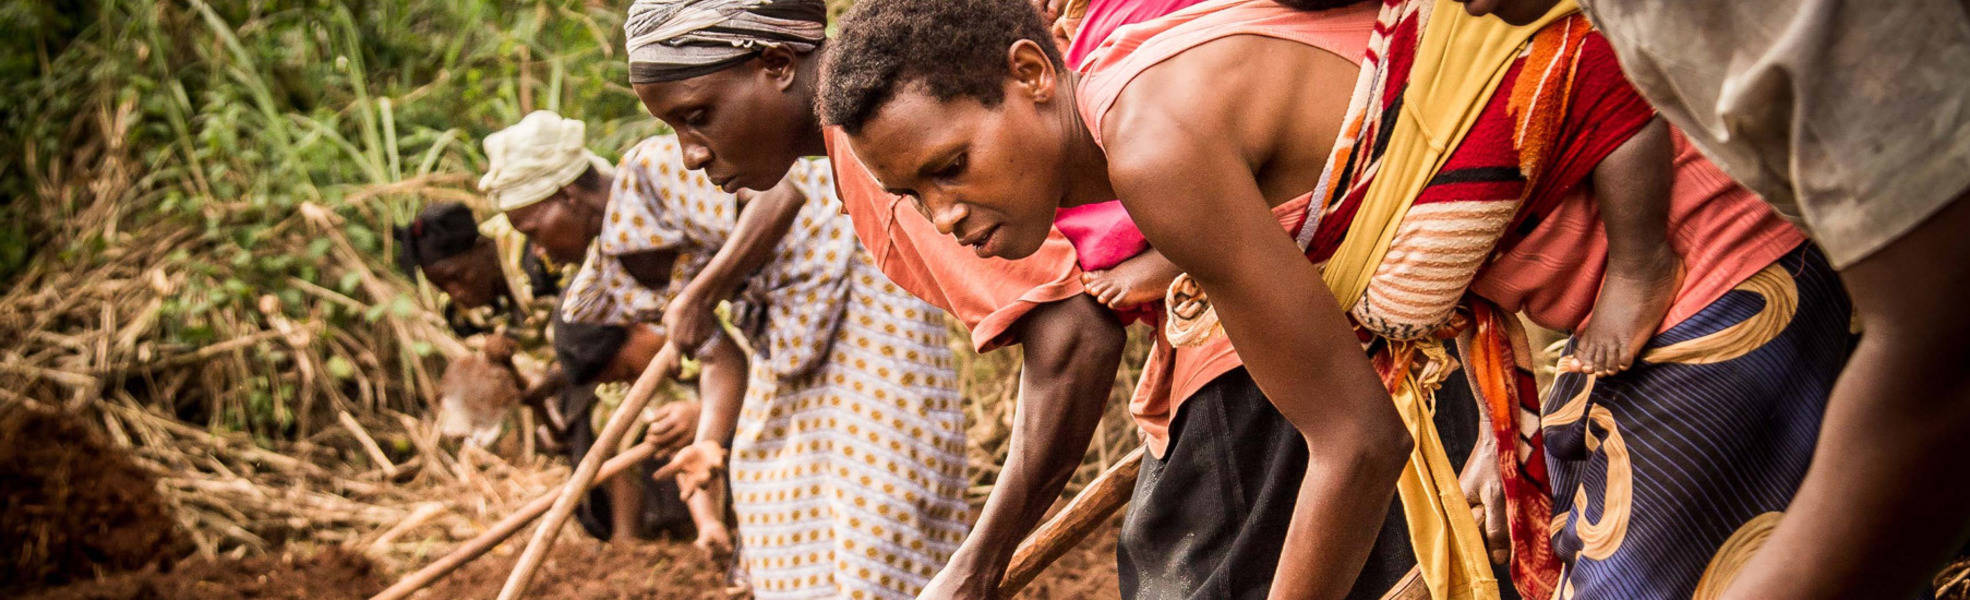 Farm work in Uganda